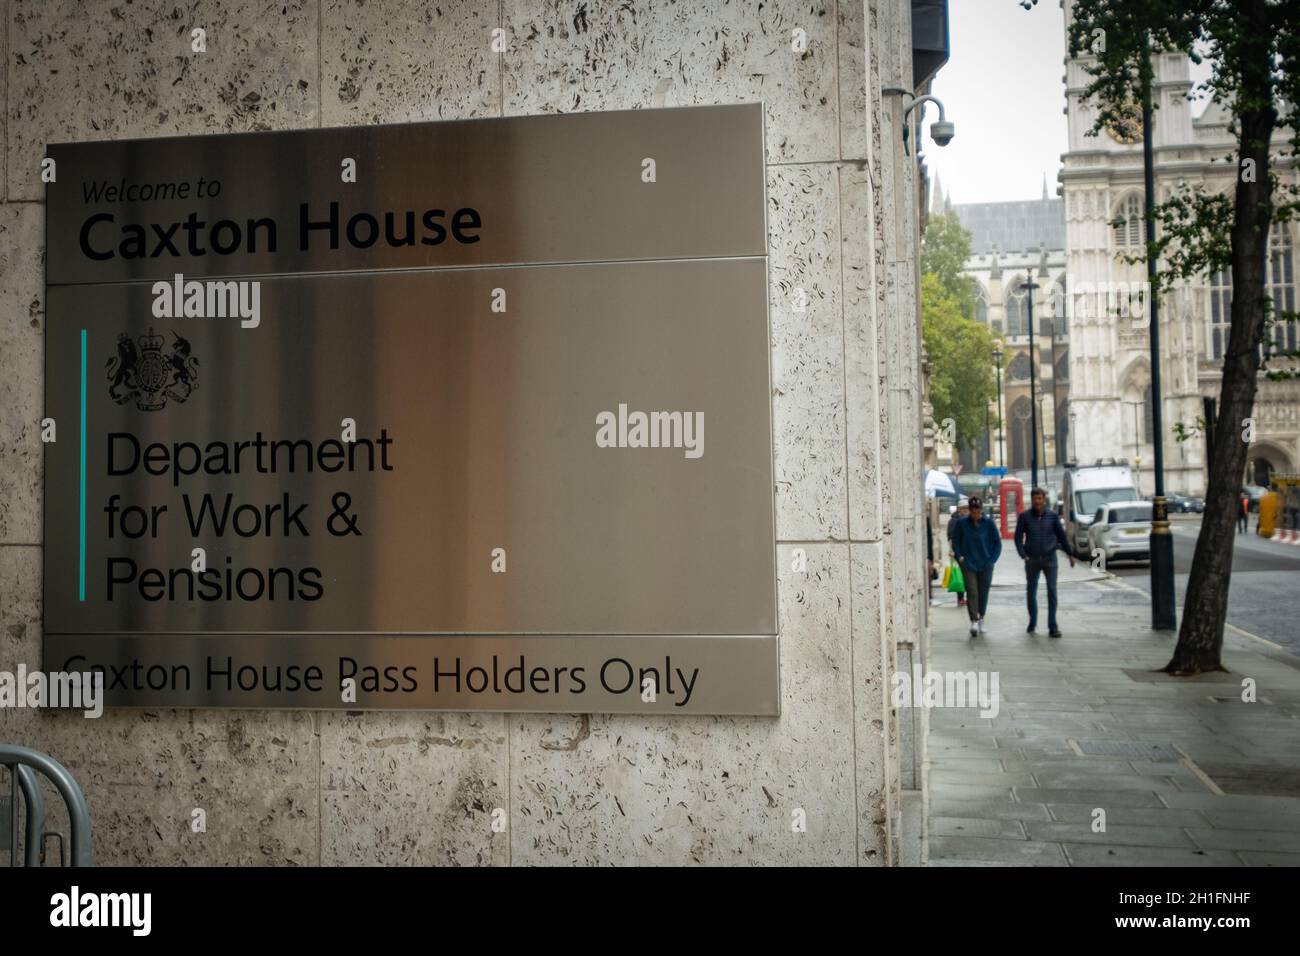 London - Abteilung für Arbeit und Pensionen am Caxton House in Westminster. Regierungsgebäude in Großbritannien. Stockfoto